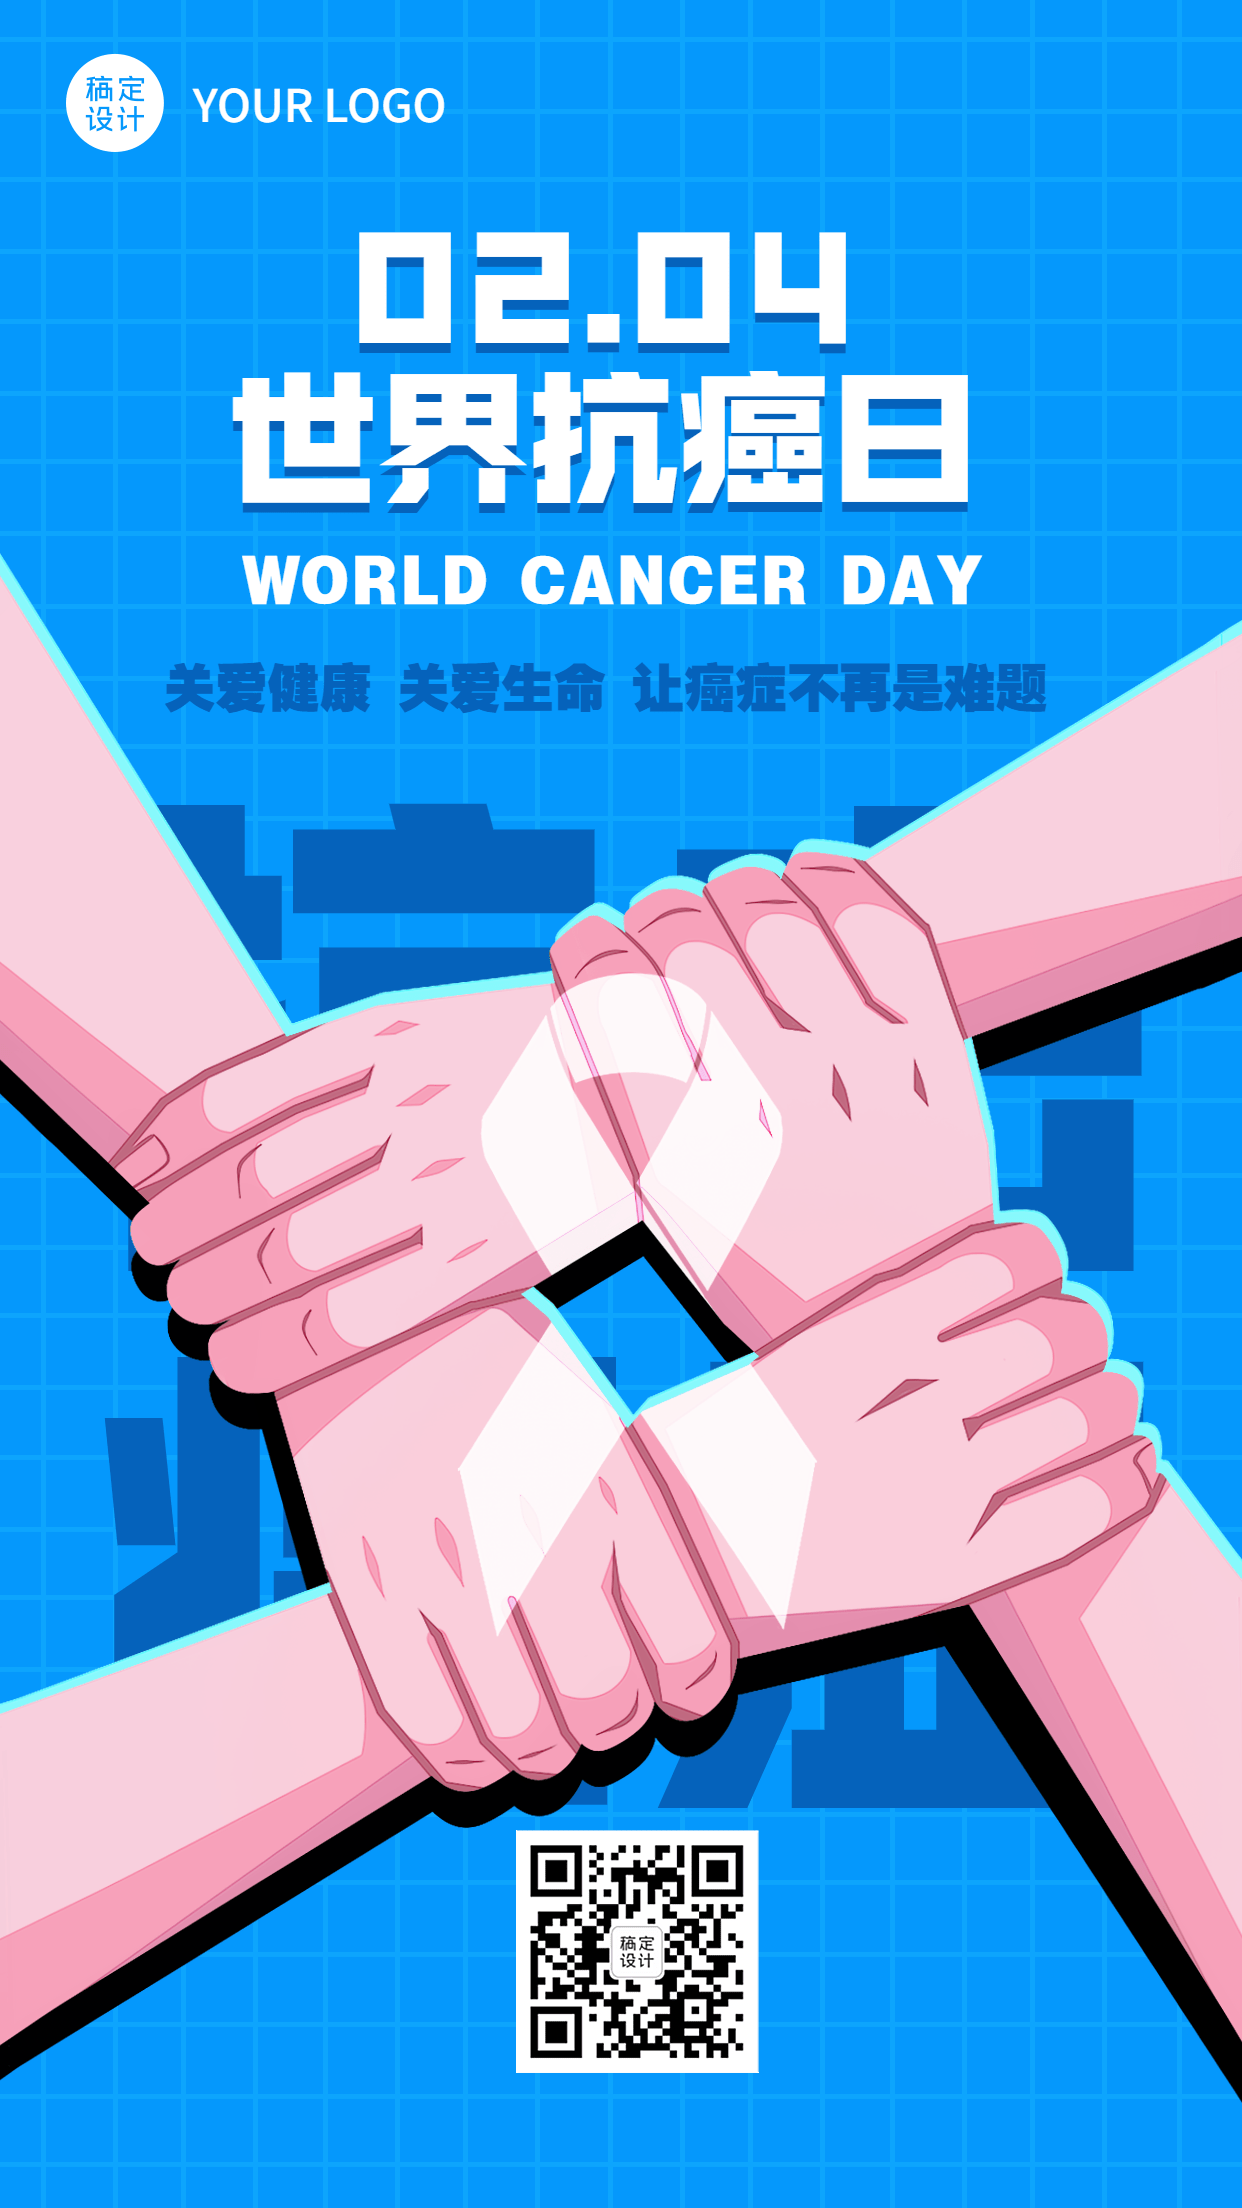 2.4世界抗癌日节日宣传简约手绘手机海报